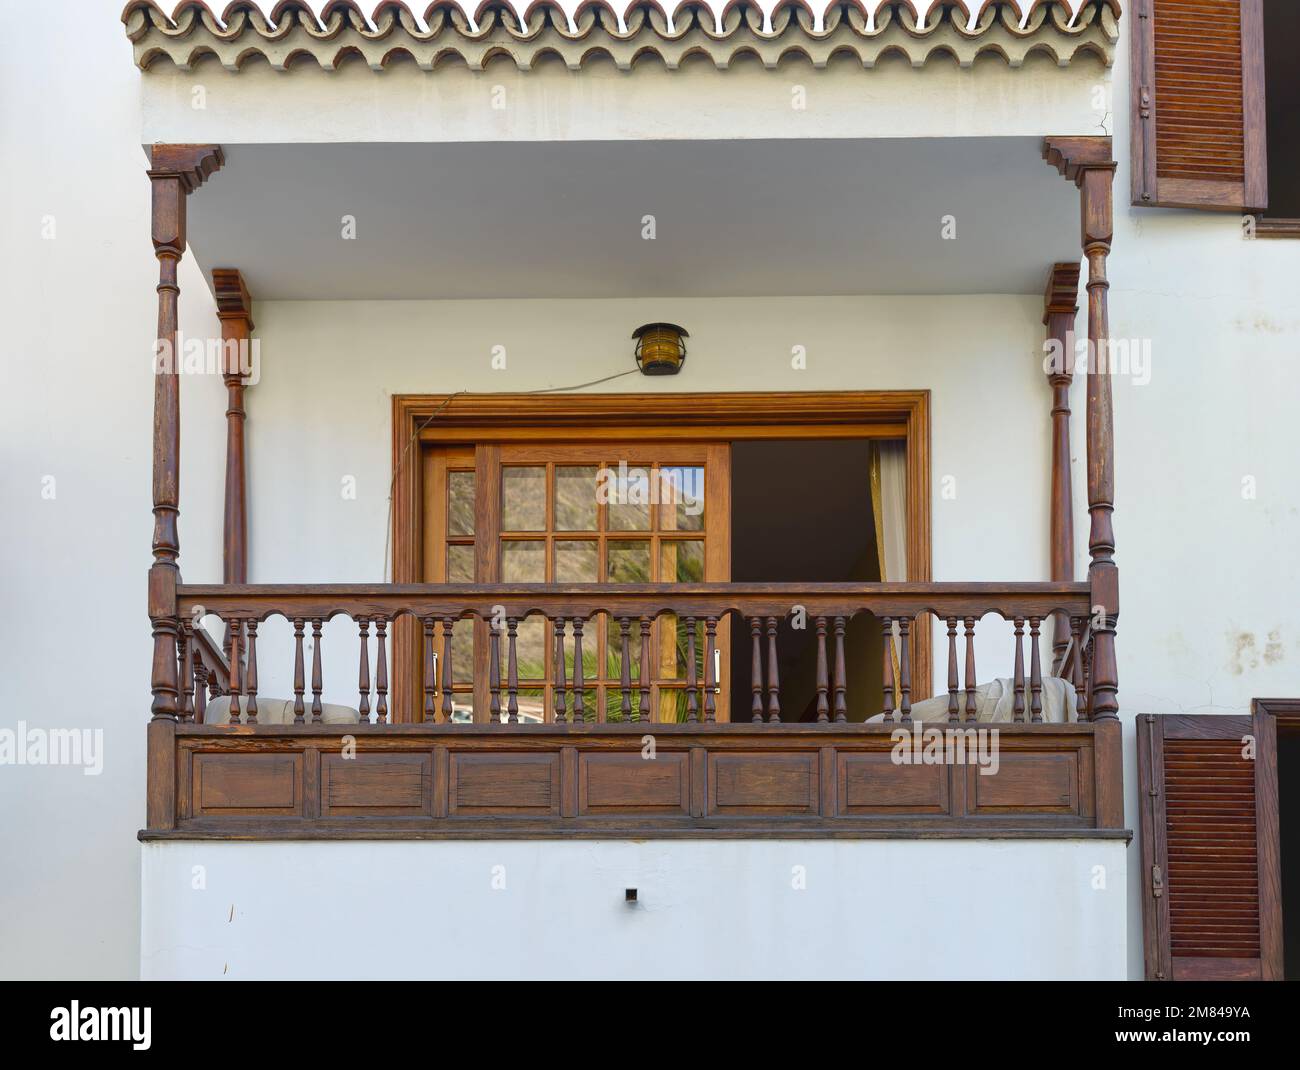 Chiusura del balcone con baldacchino in legno, ringhiera e tenda parasole orizzontale su persiane di porte e finestre. Foto Stock